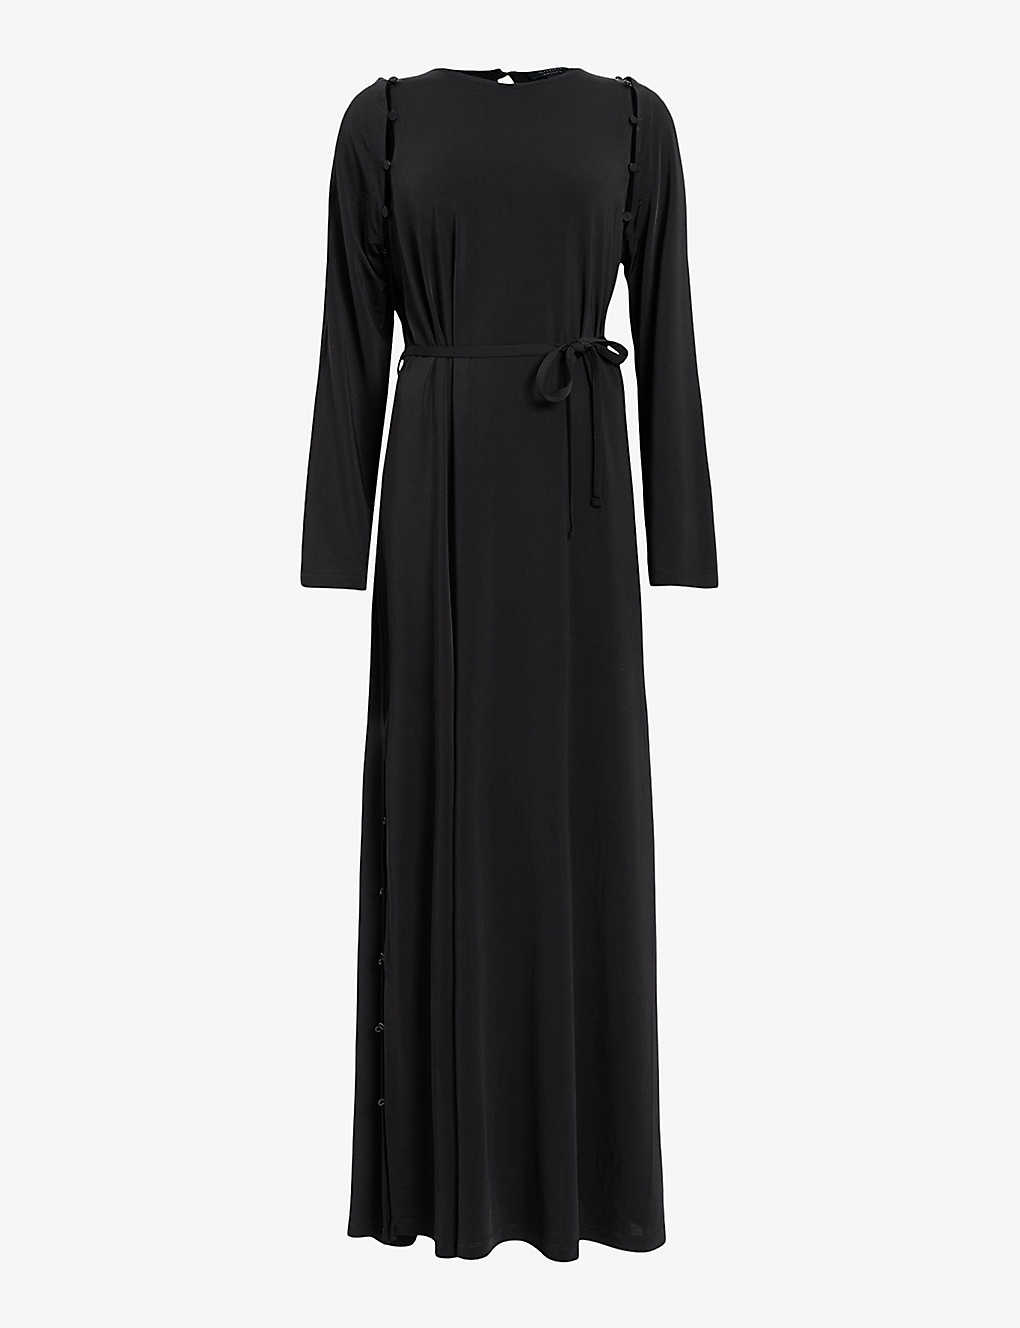 Shop Allsaints Women's Black Susanna Crew-neck Side-split Stretch-woven Maxi Dress